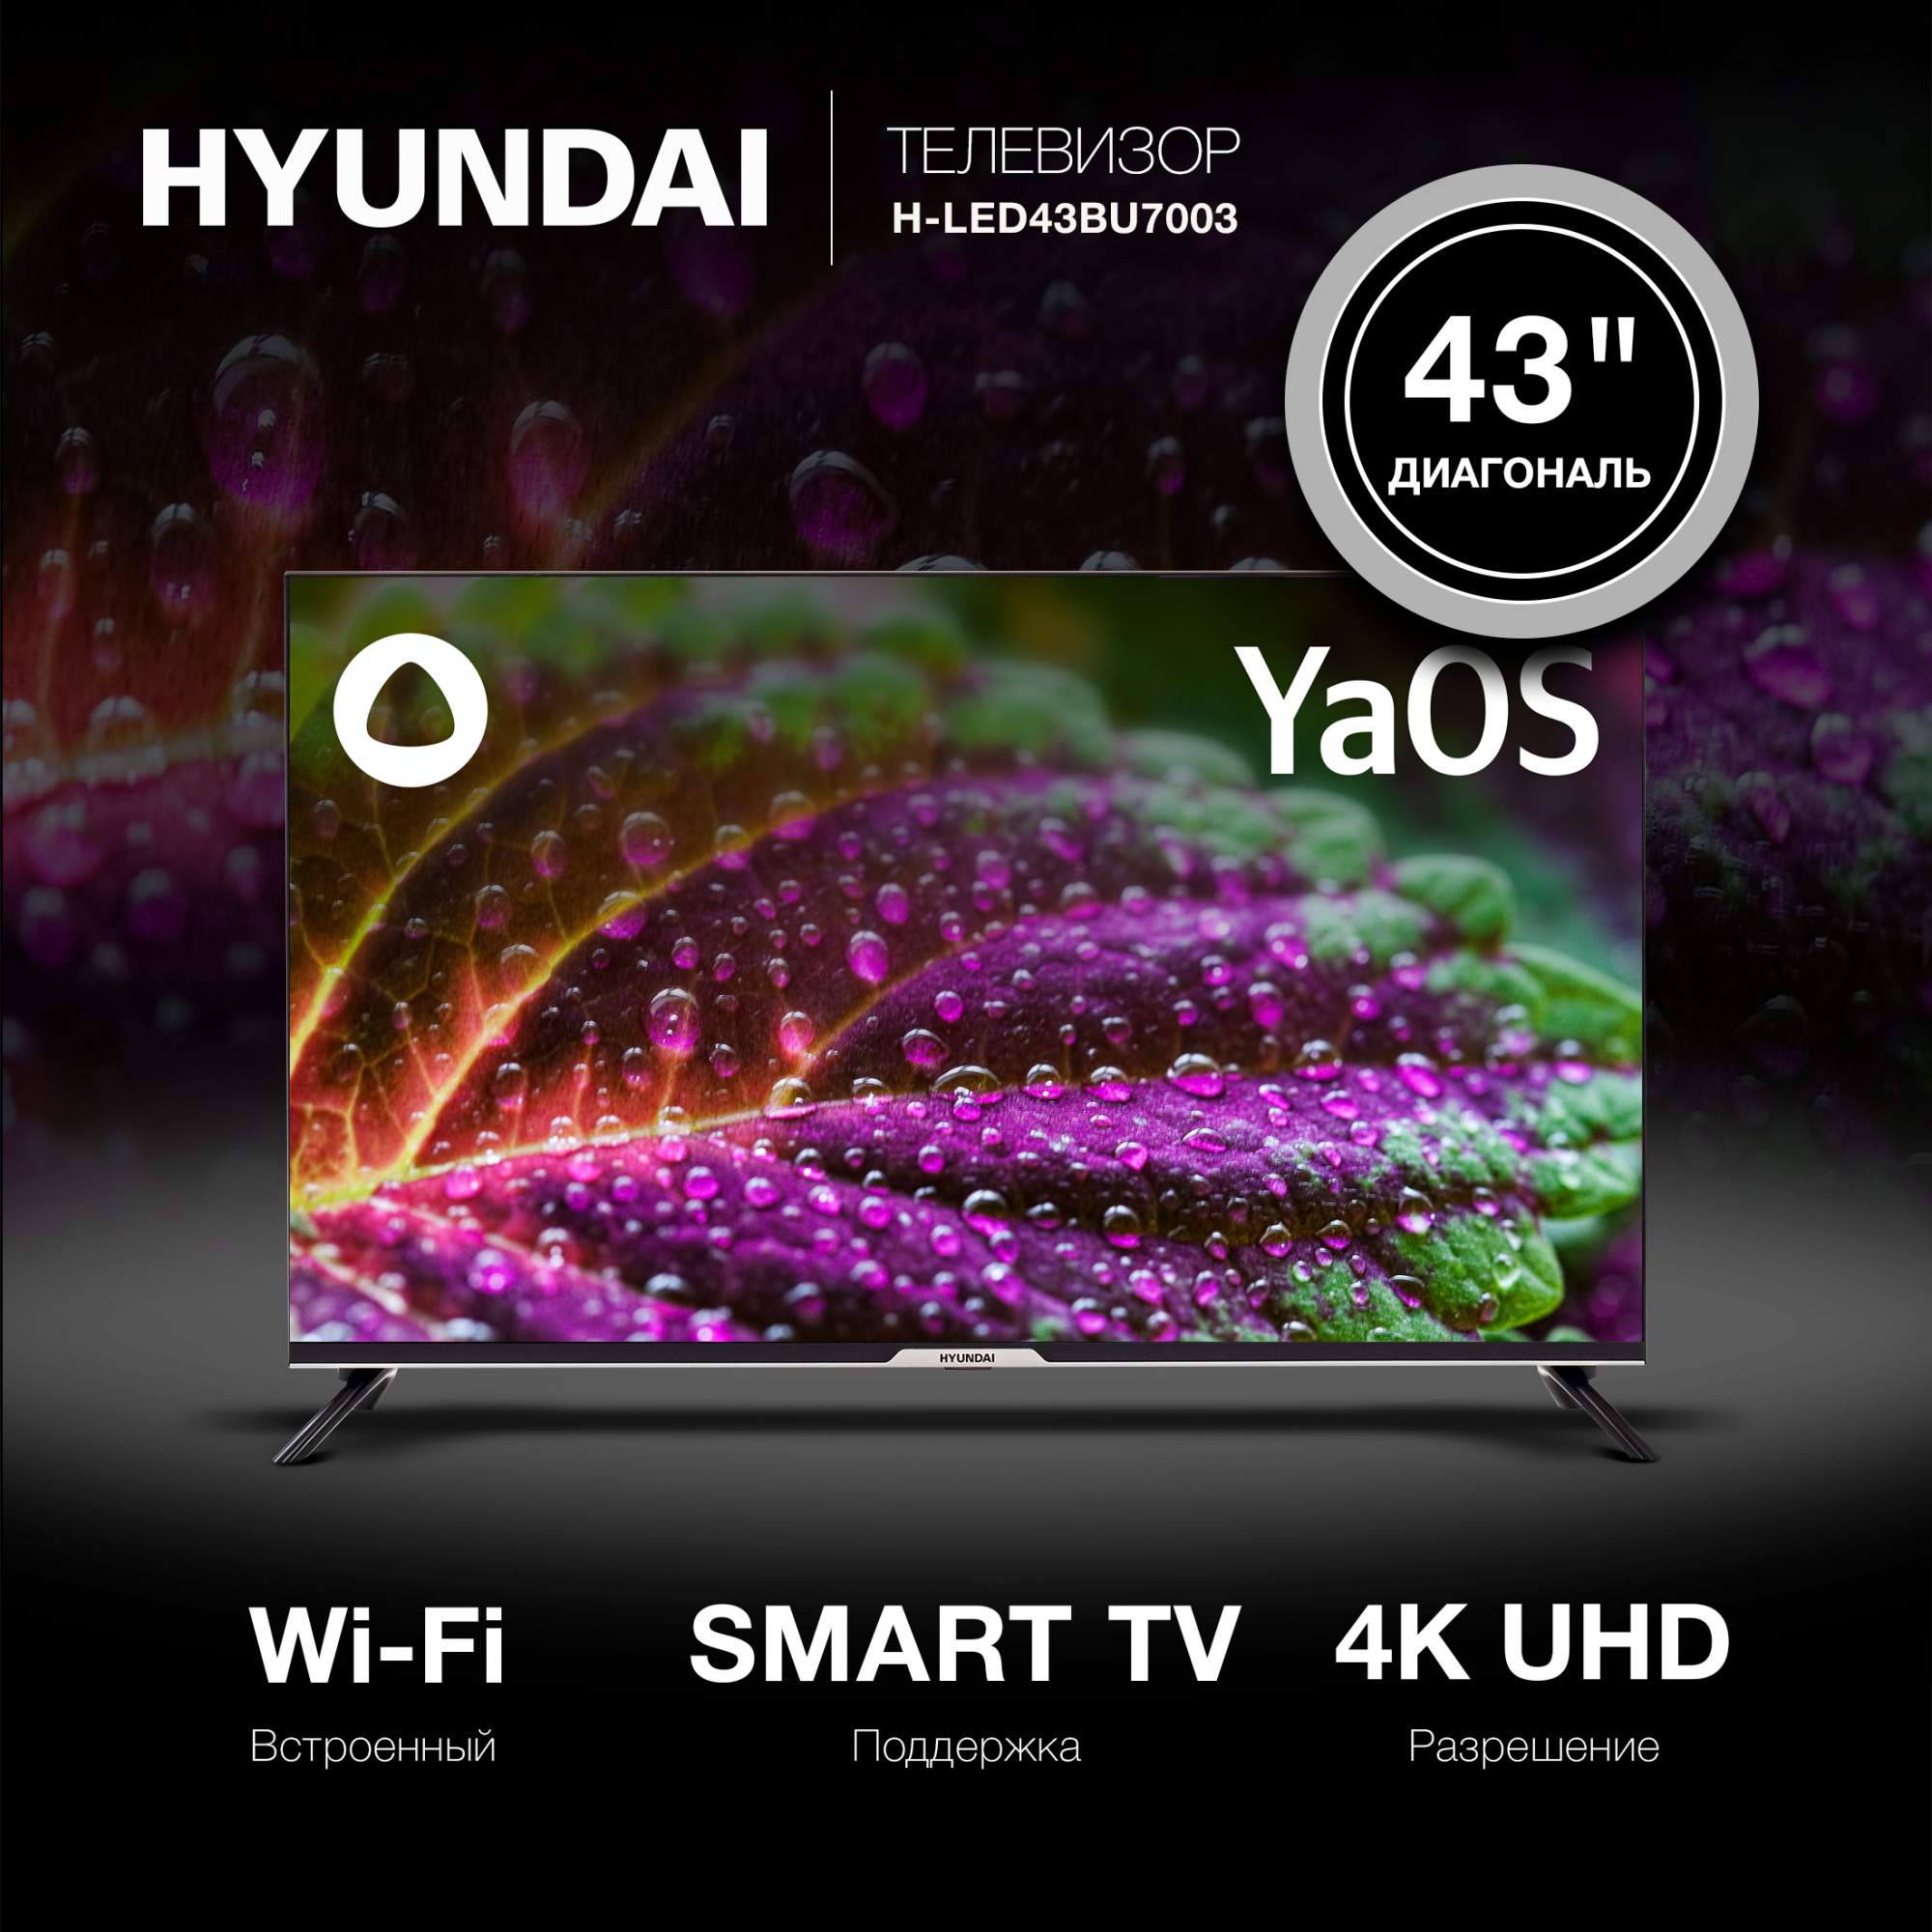 Телевизор HYUNDAI H-LED43BU7003, 43"(109 см), UHD 4K - купить в О